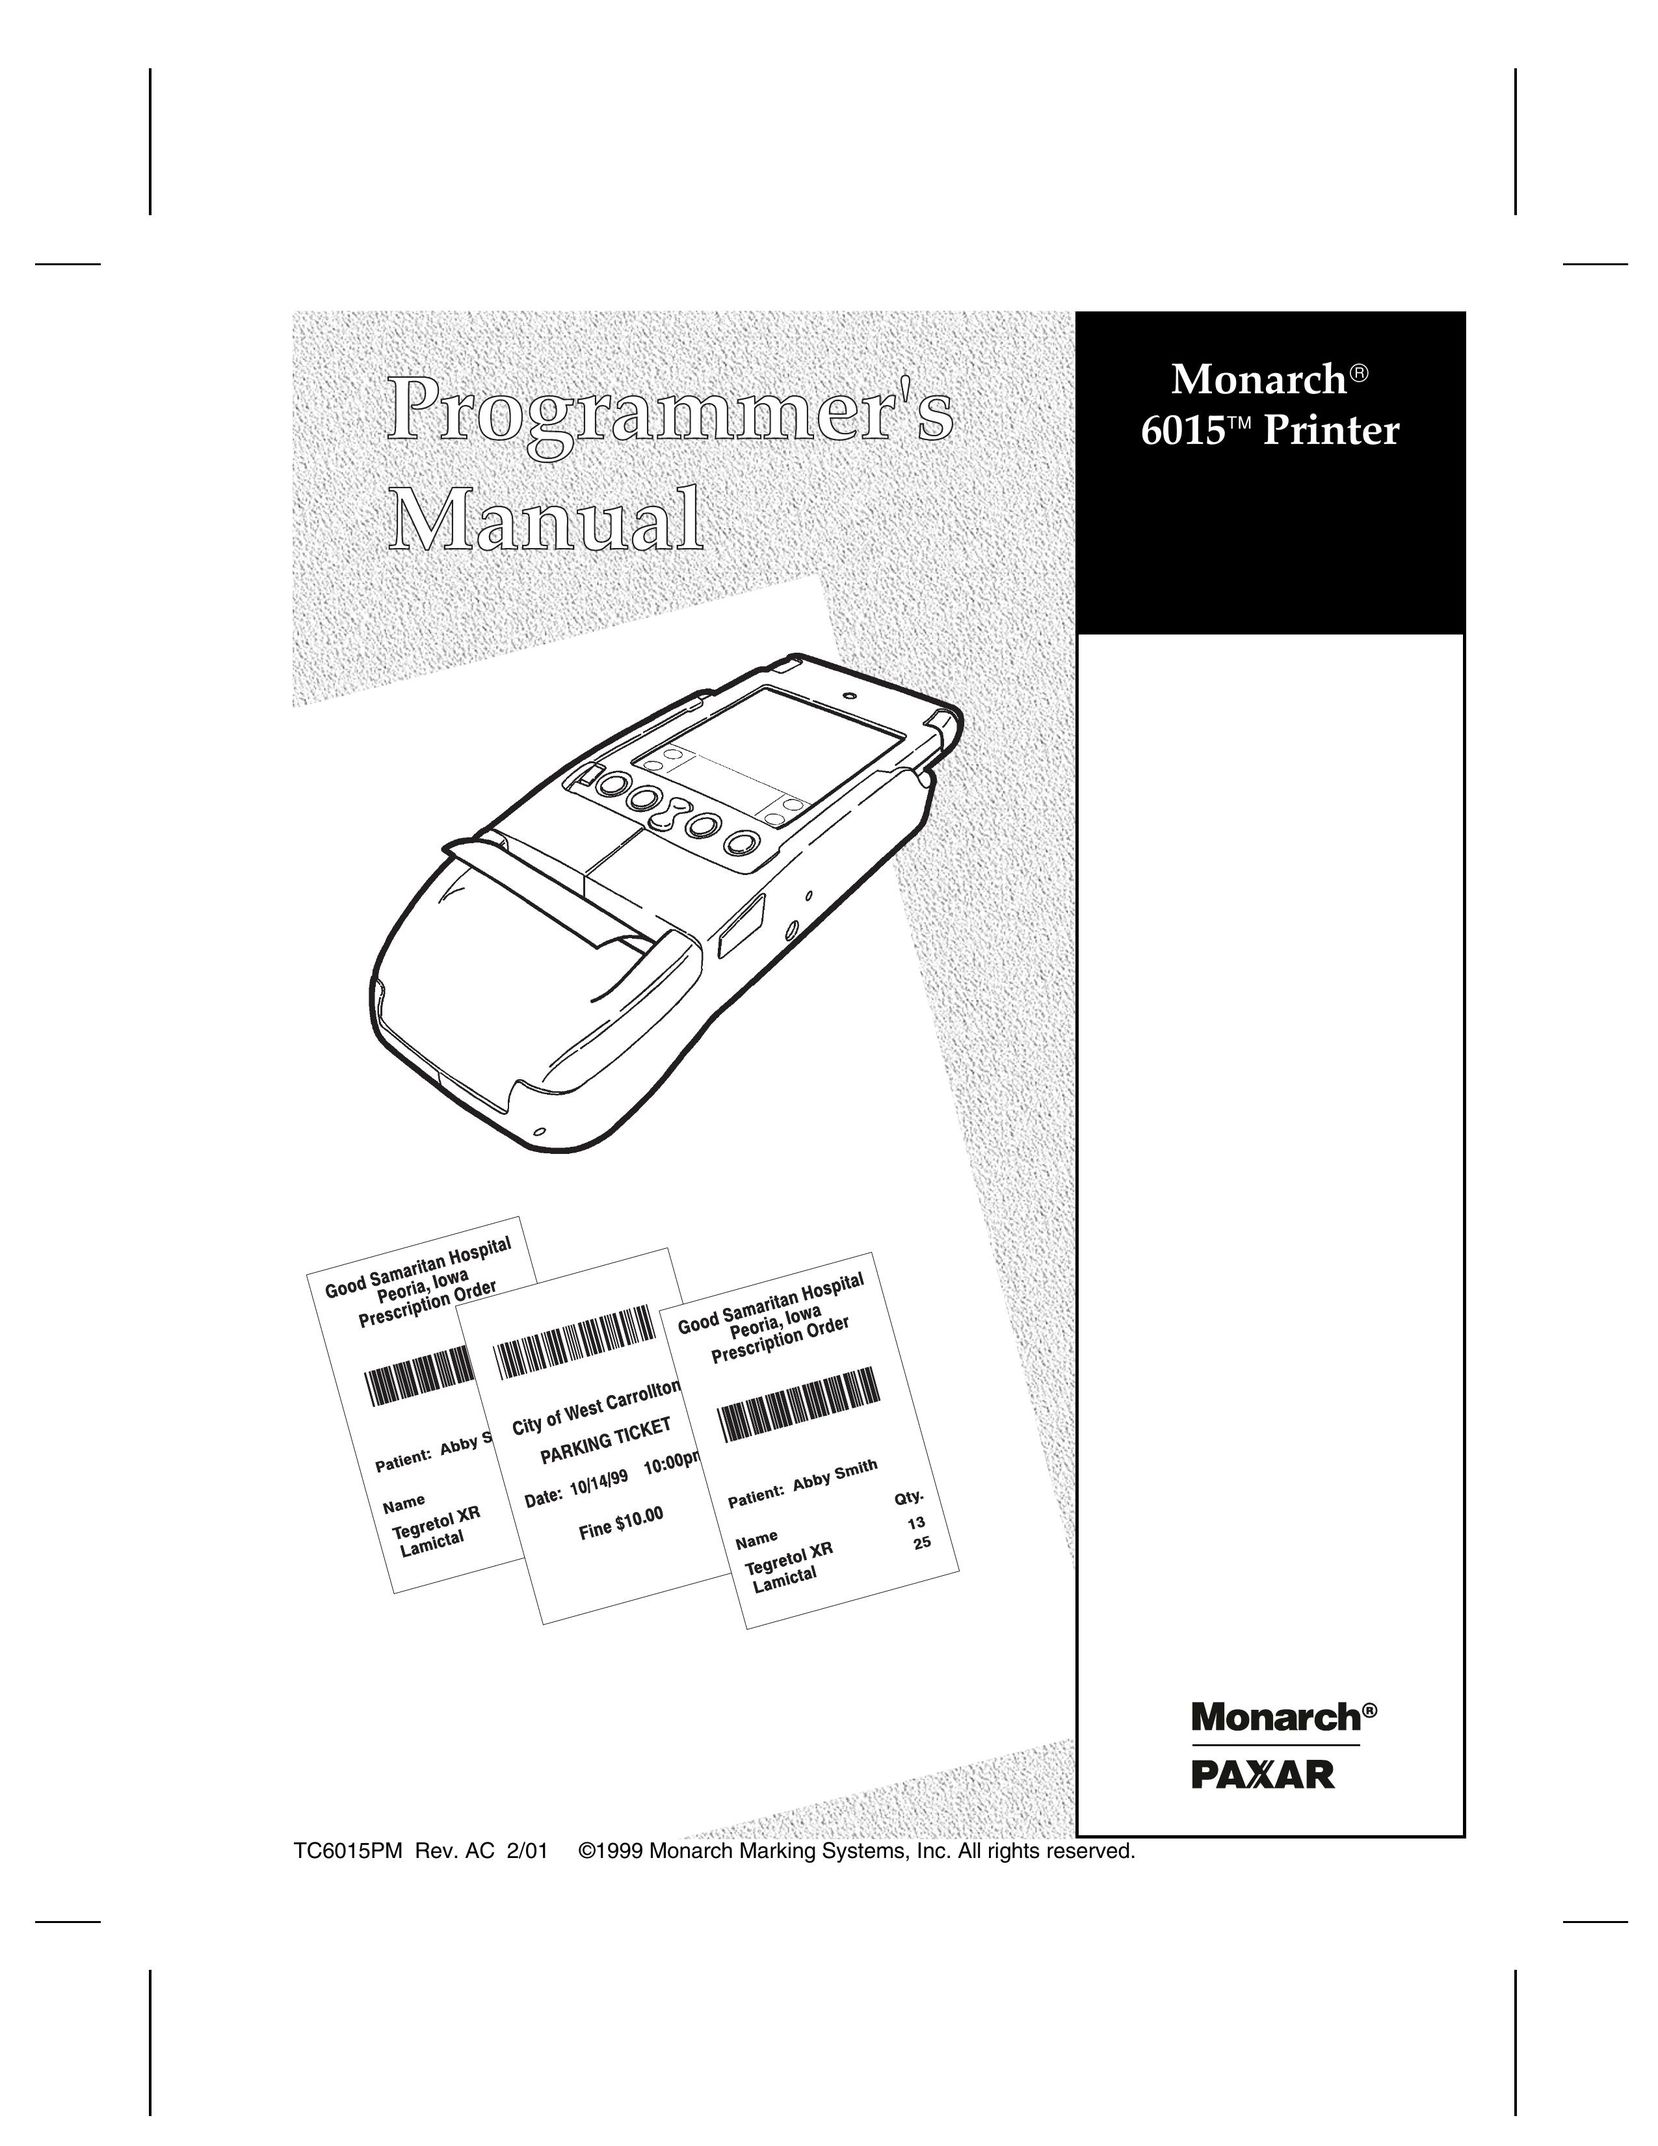 Paxar 6015 Printer User Manual